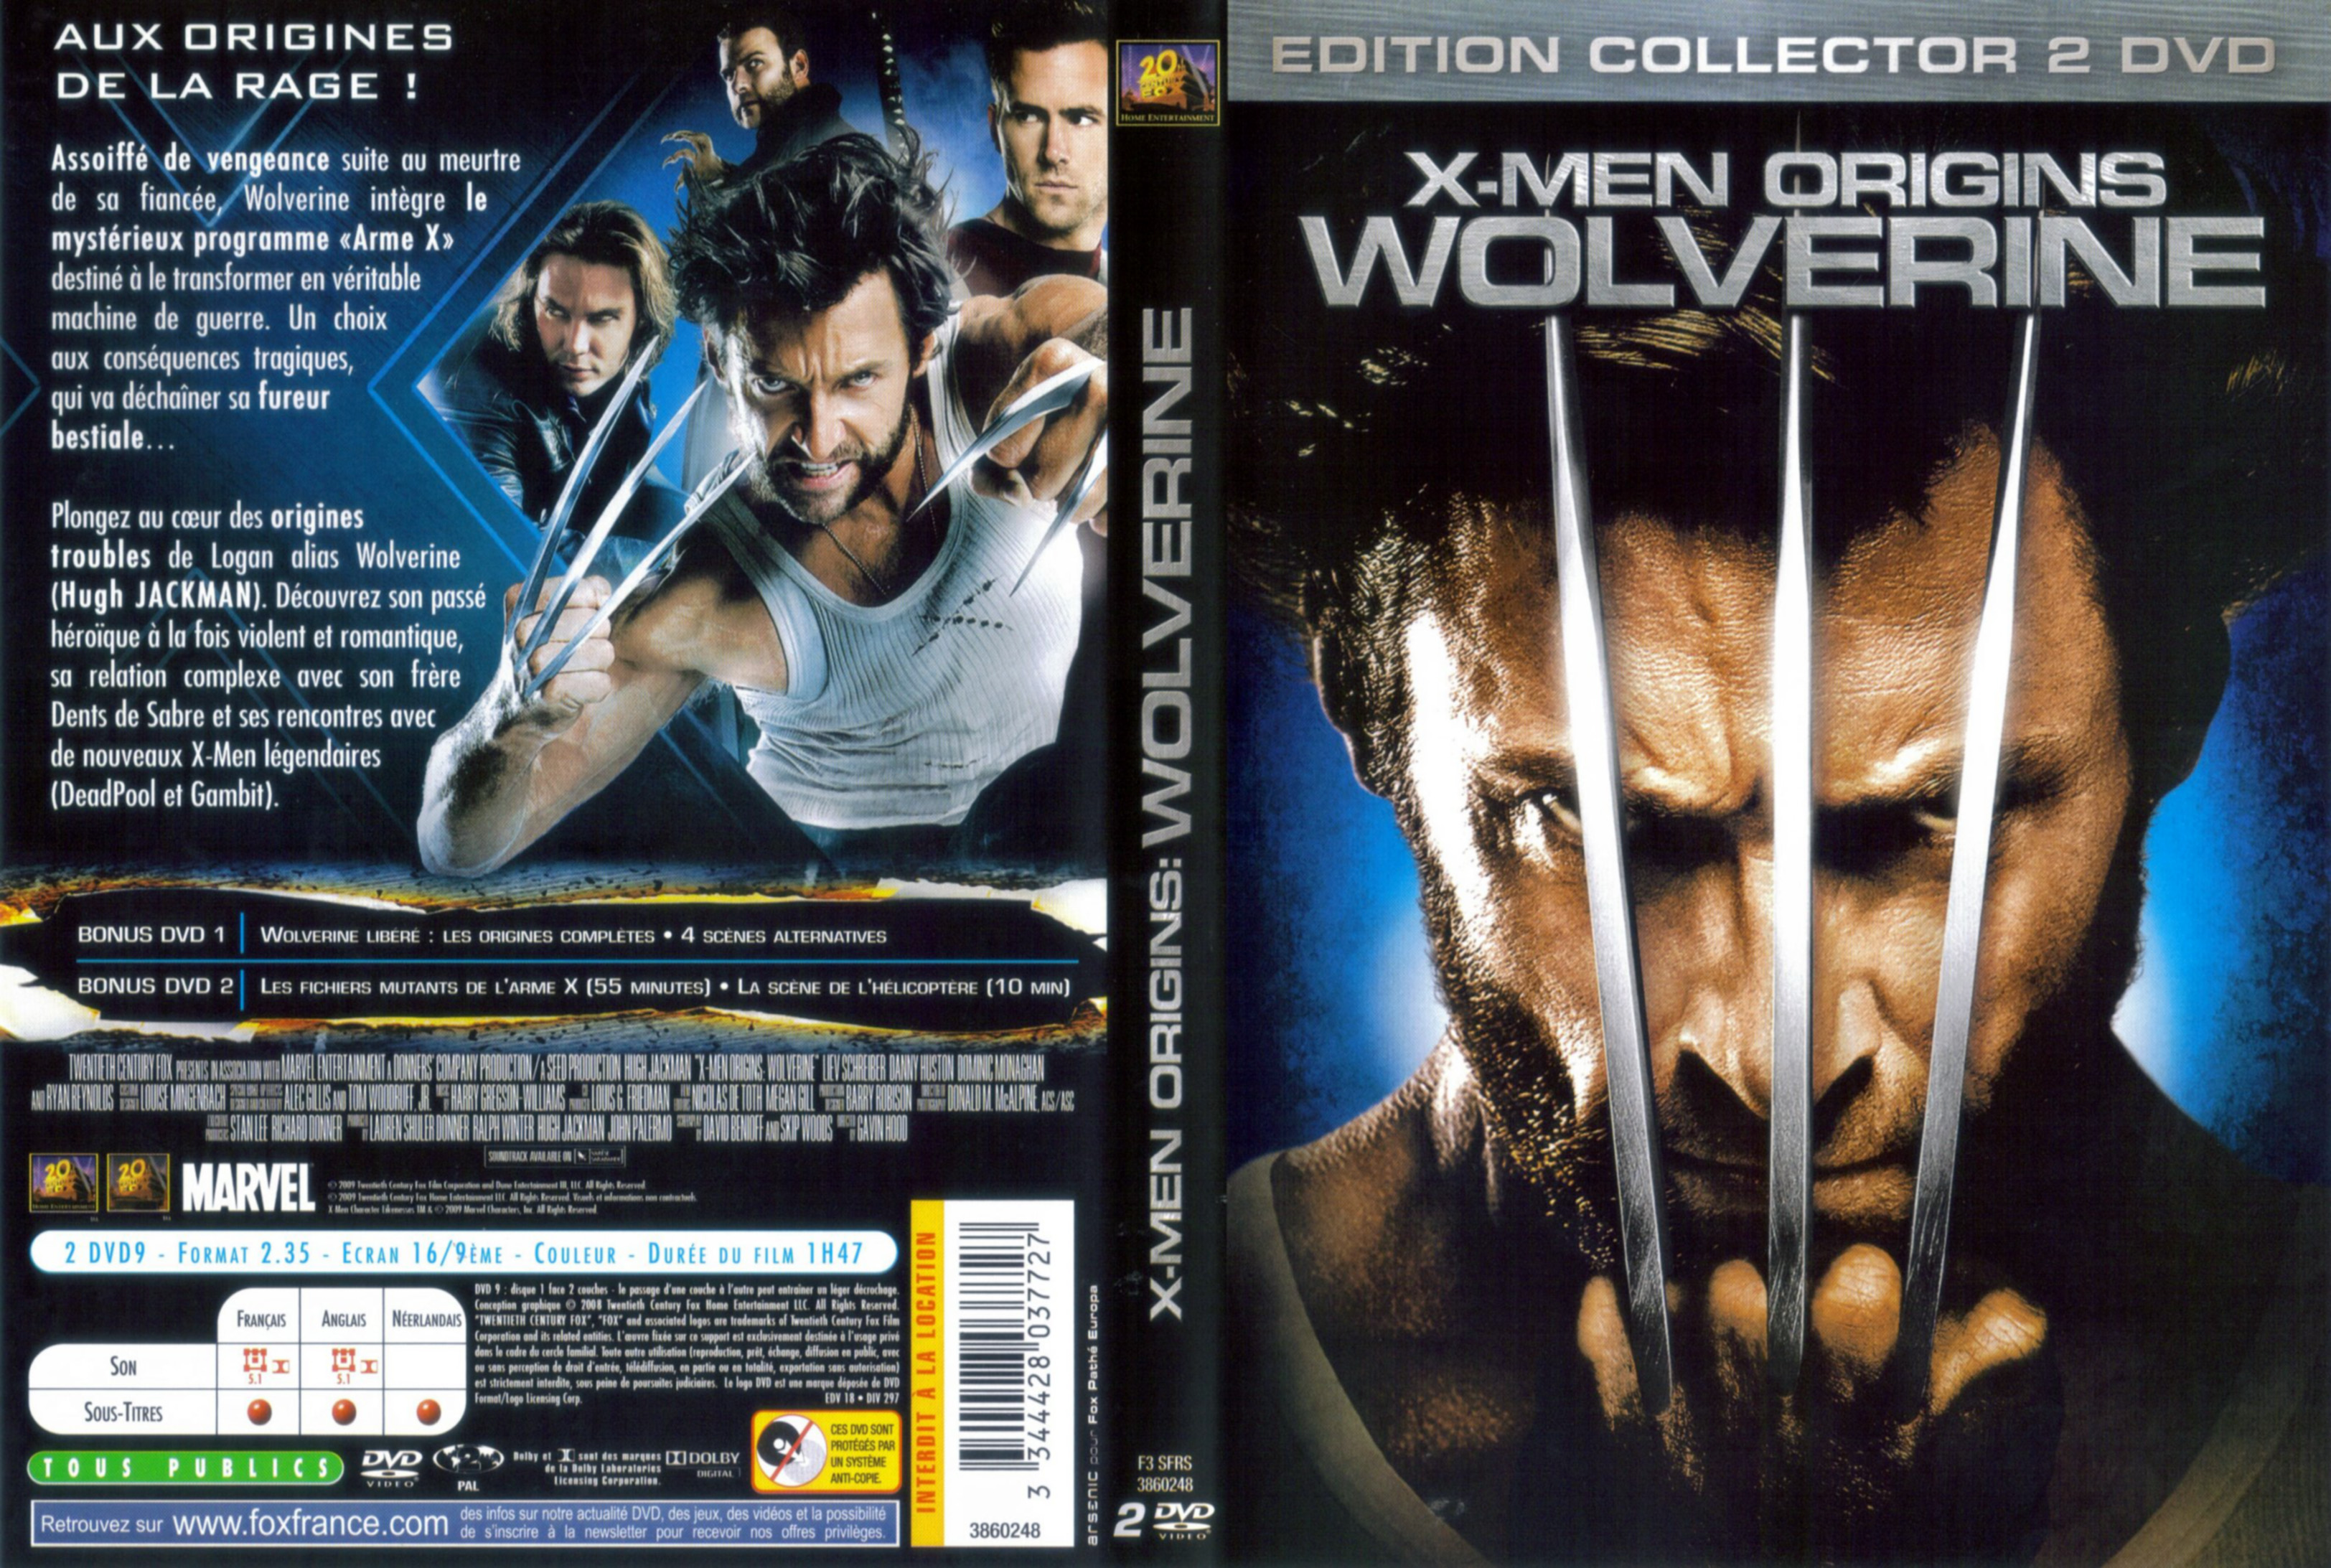 Jaquette DVD X-Men Origins Wolverine v2